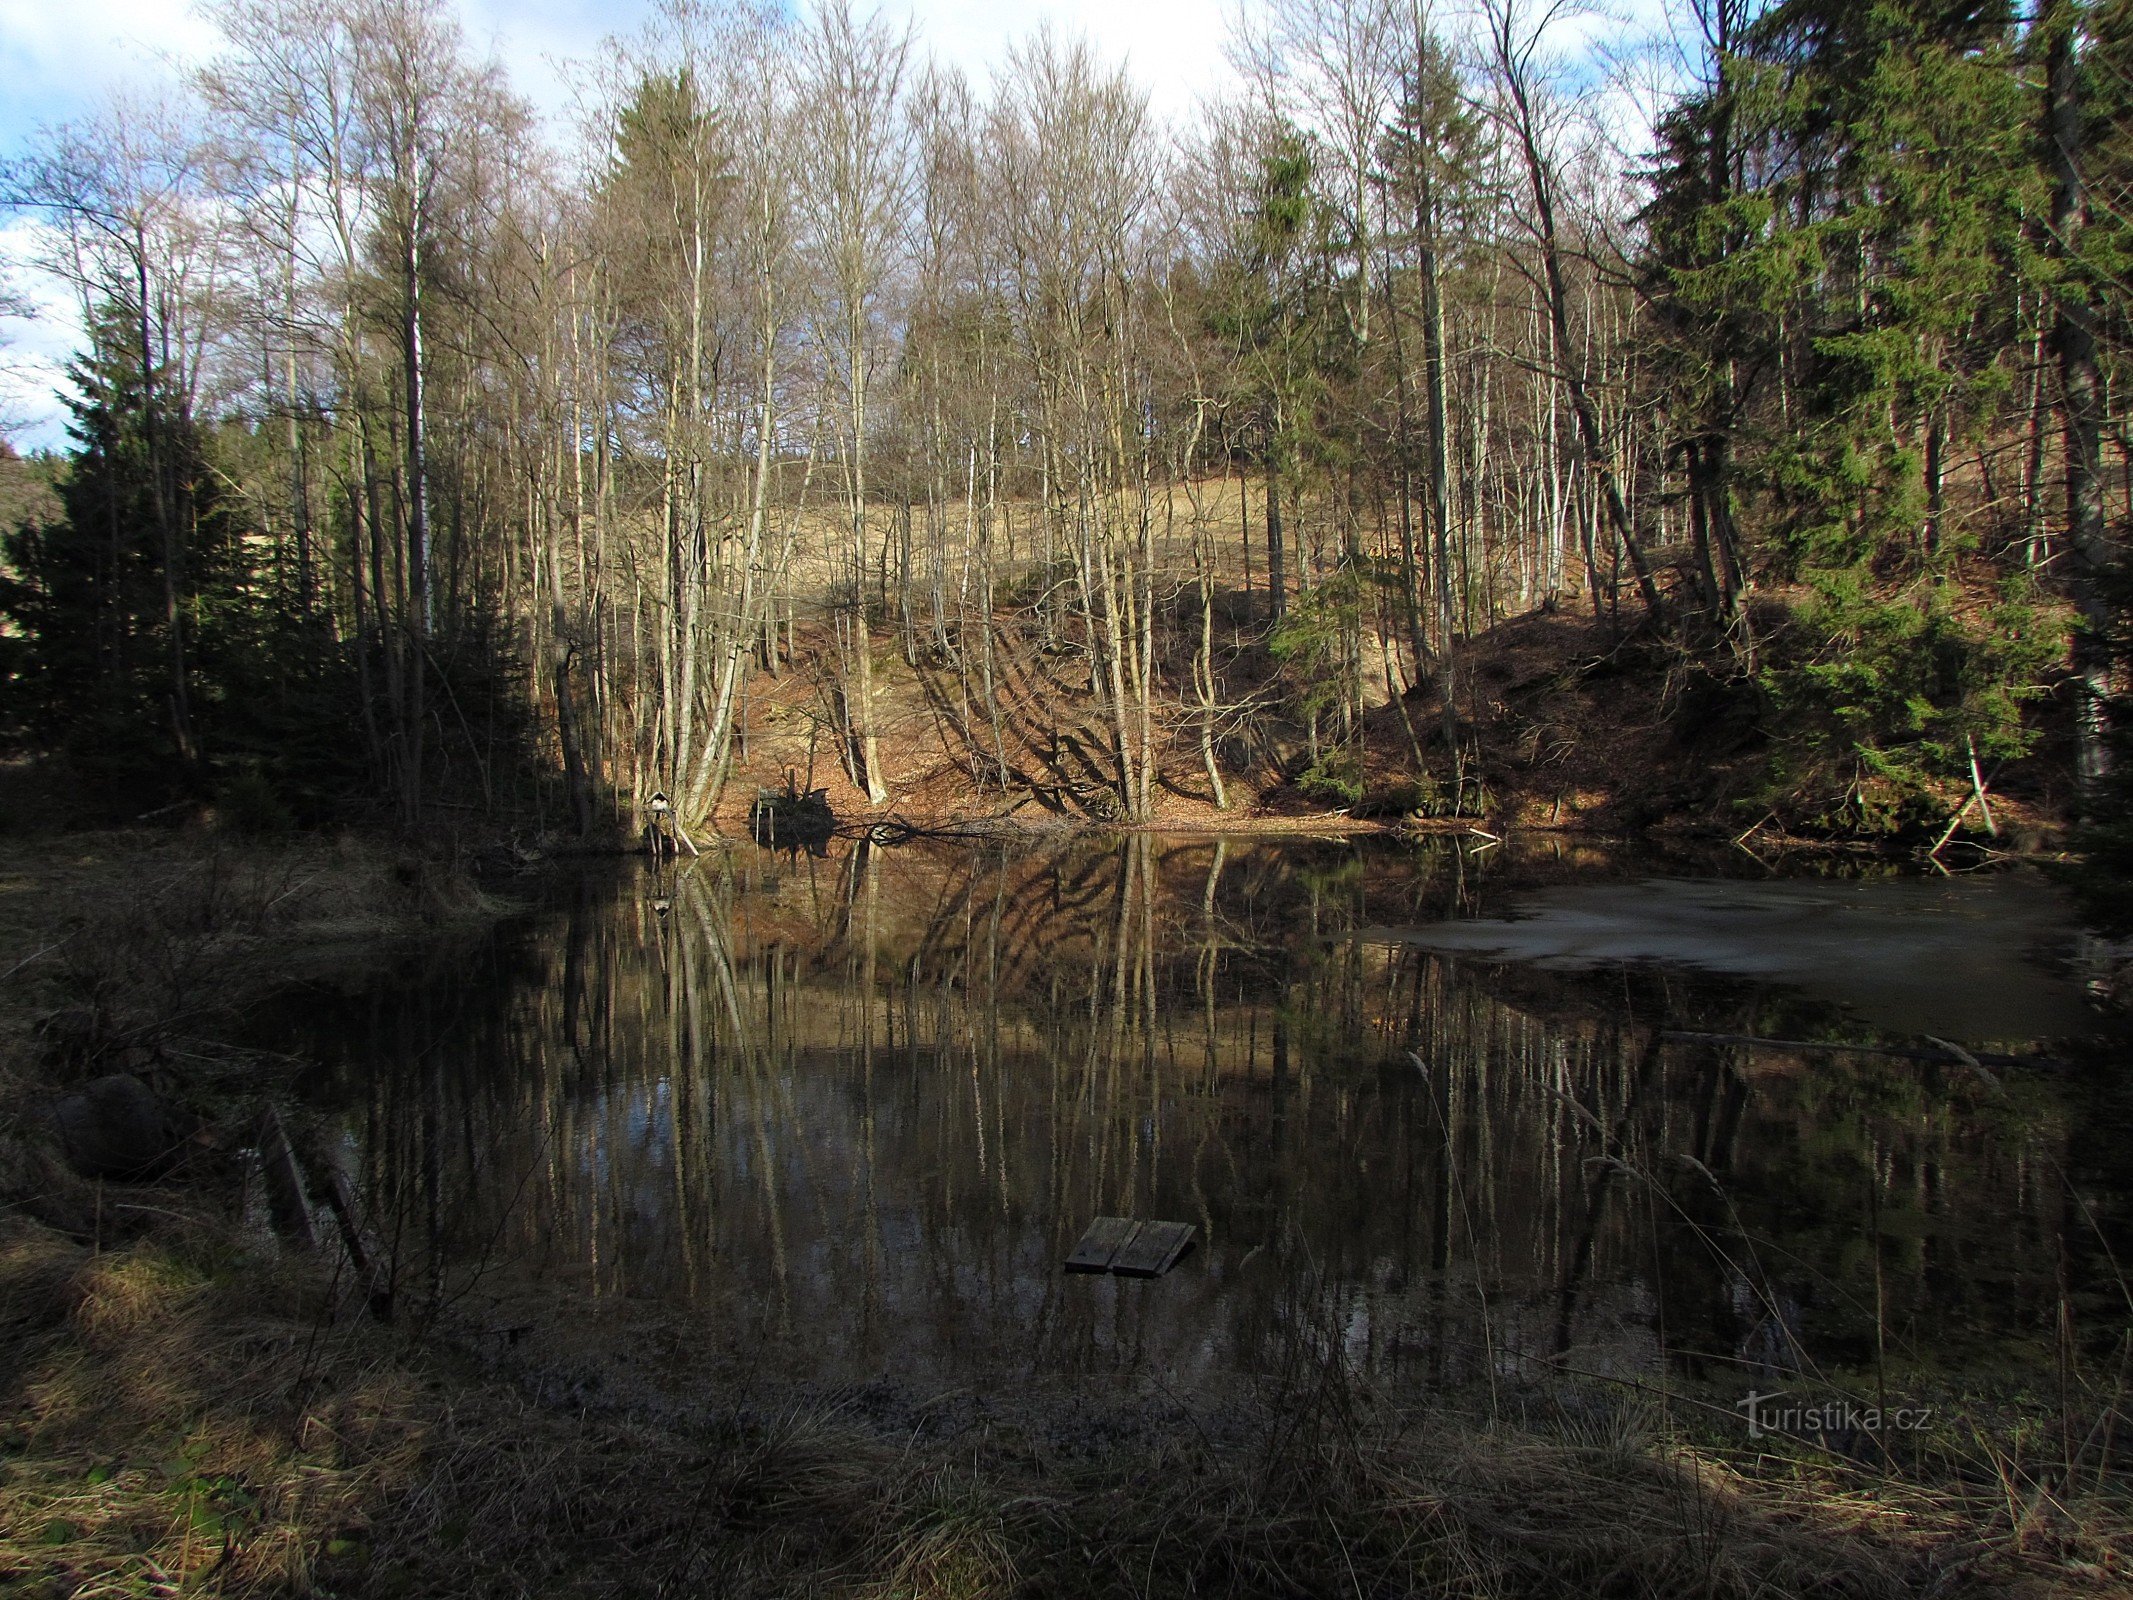 The pond near Valašská Senica